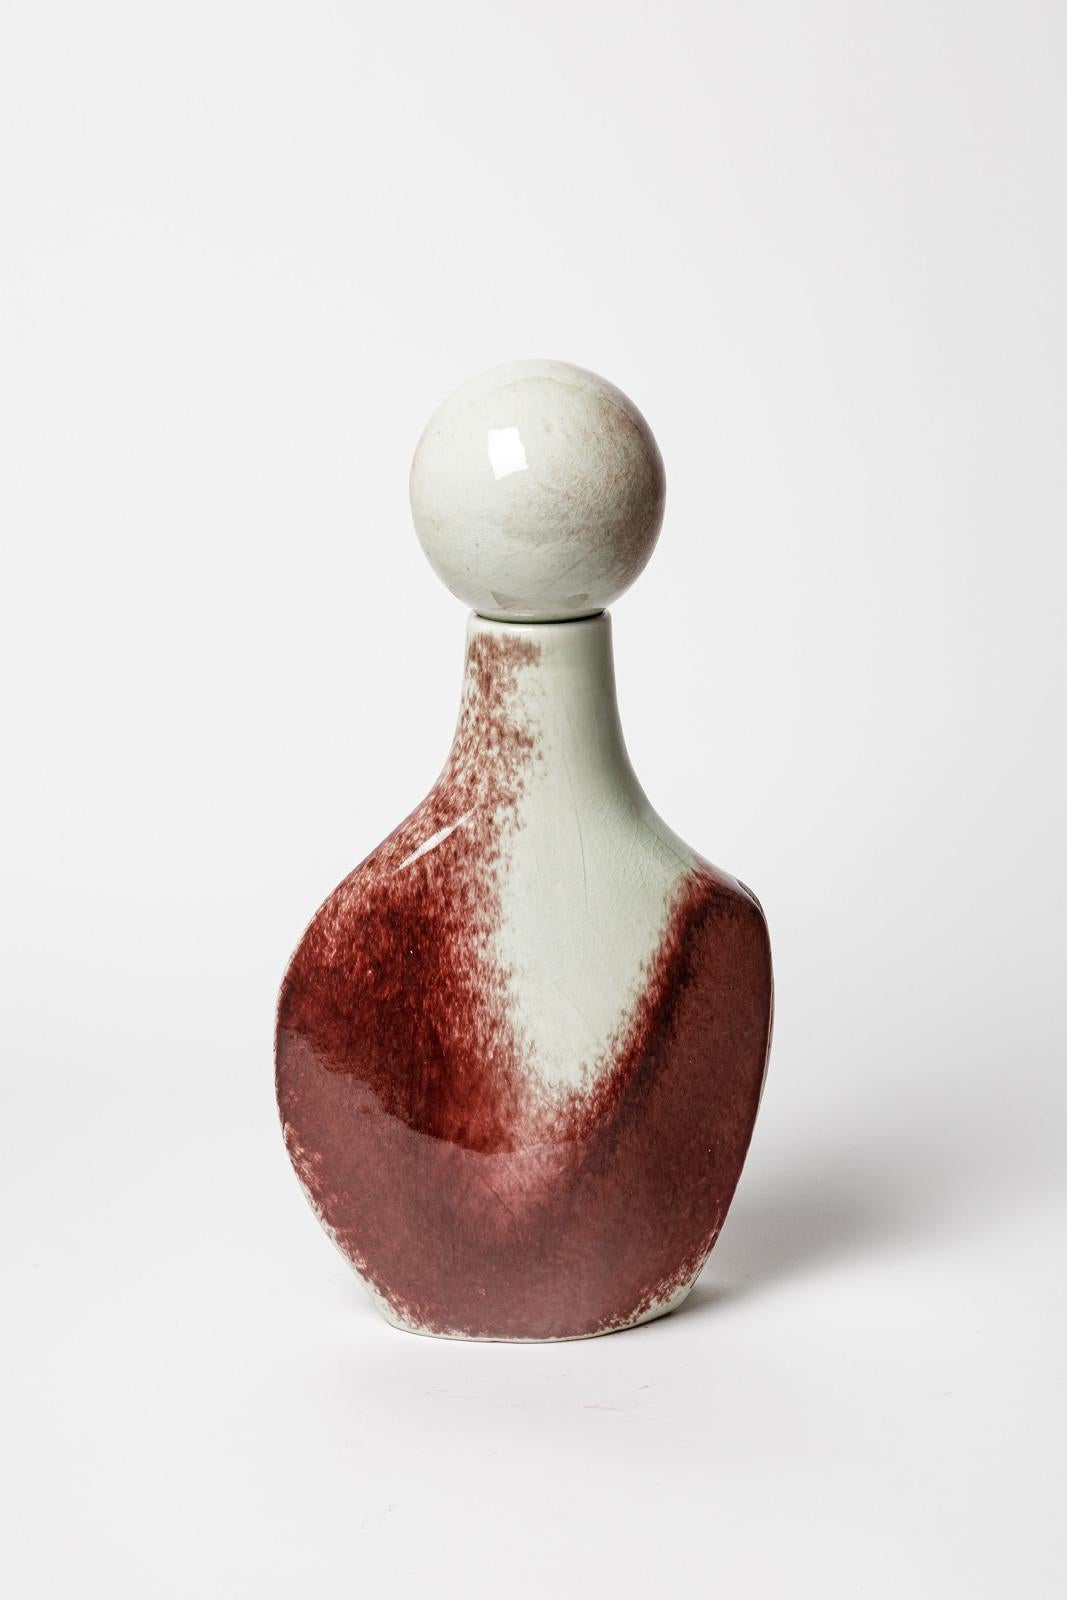 Jacqueline und Tim Orr

Realisiert um 1970

Große weiße und rote Porzellanflasche oder Vase aus Keramik

Unterzeichnet

Ursprünglicher, perfekter Zustand

Höhe 32 cm
Groß 18 cm